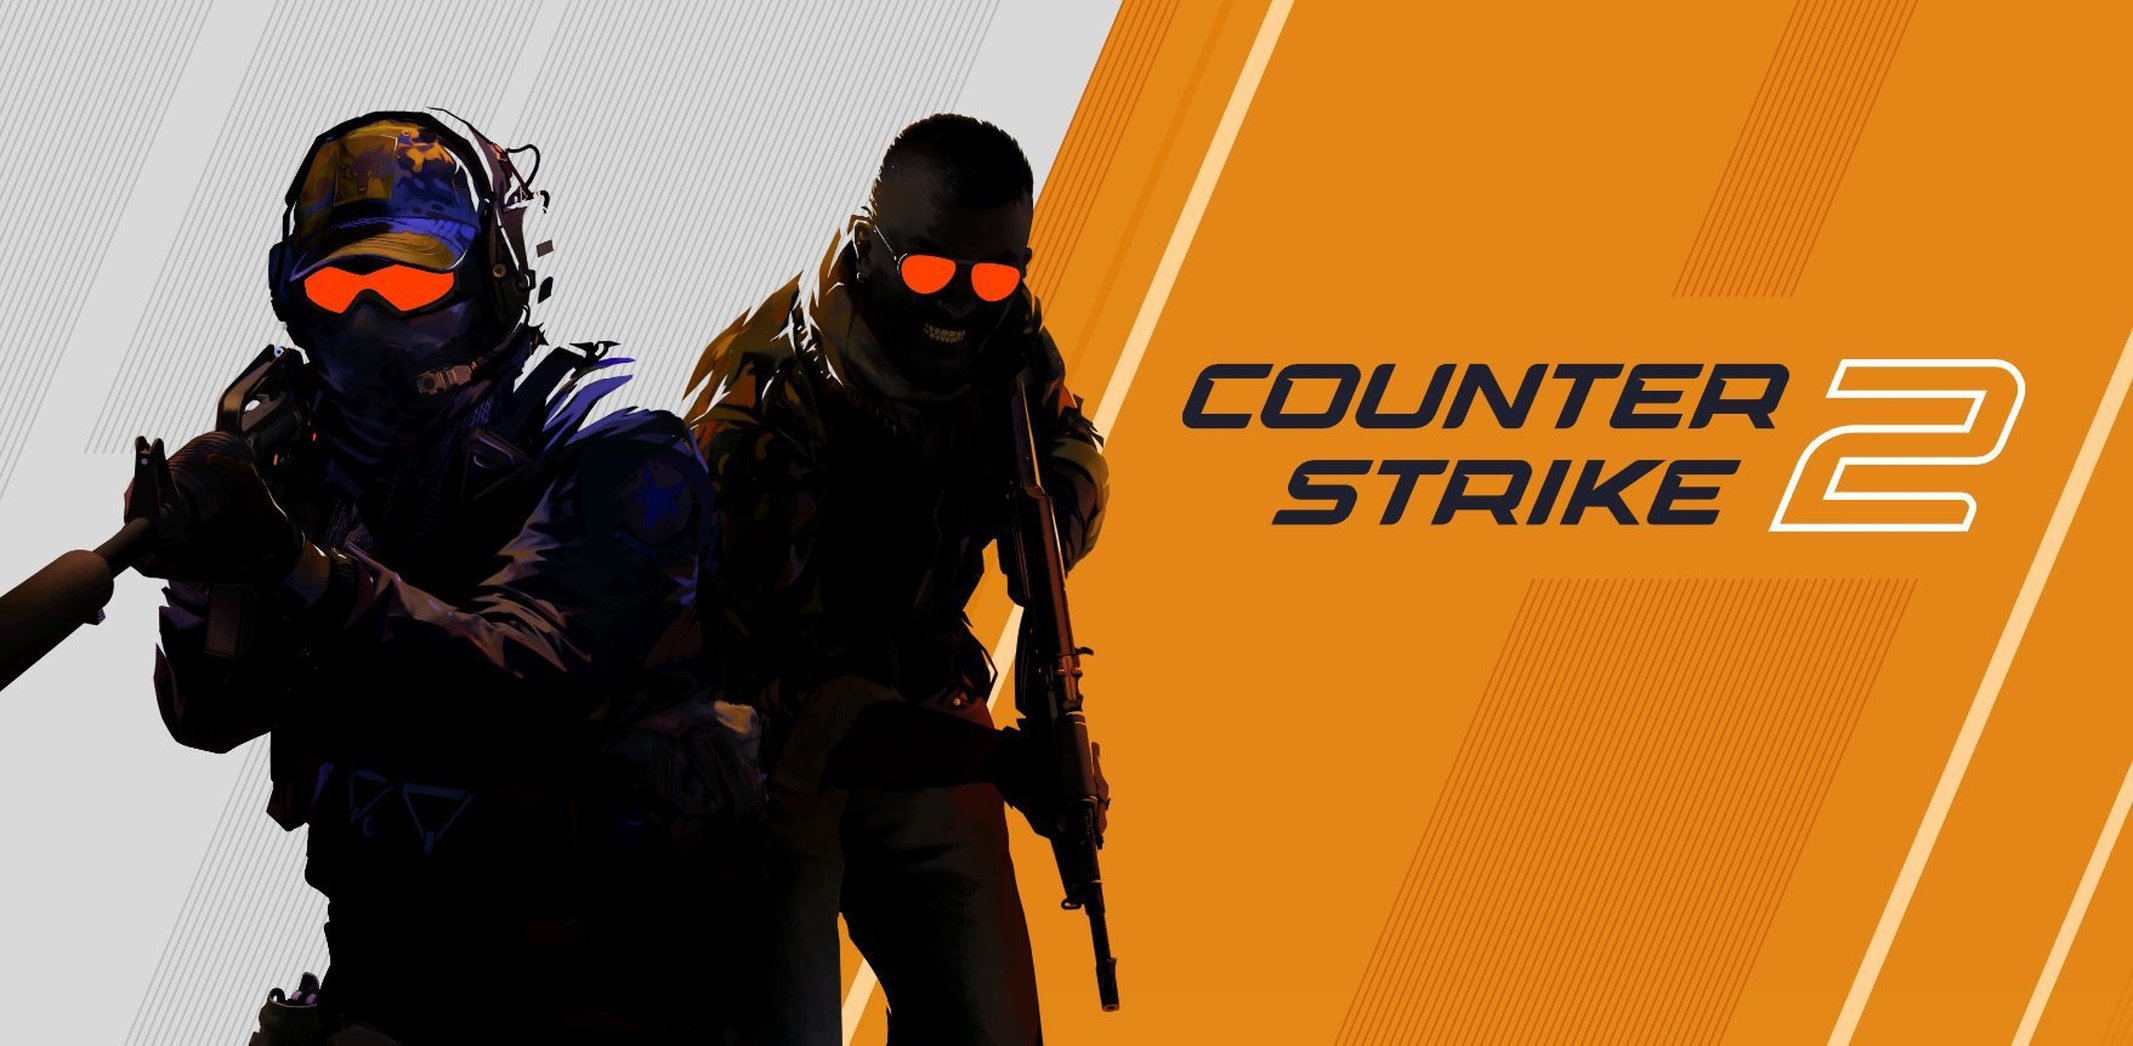 Counter-Strike 2 Immagine Ufficiale